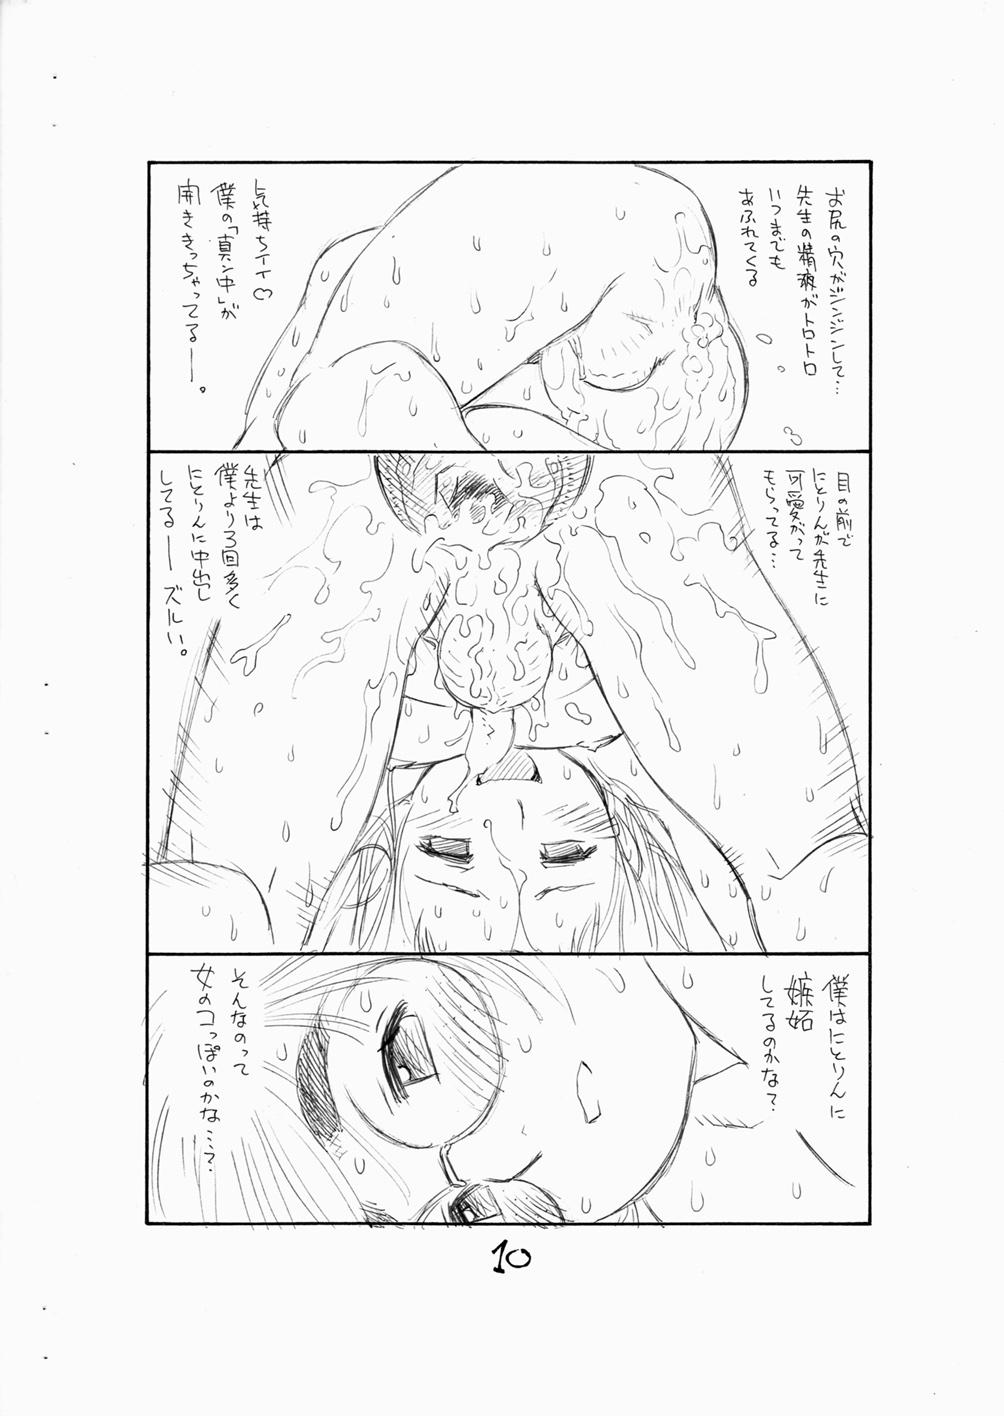 Tiny Titties Bokutachi Otokonoko 3 - Hourou musuko Skirt - Page 12